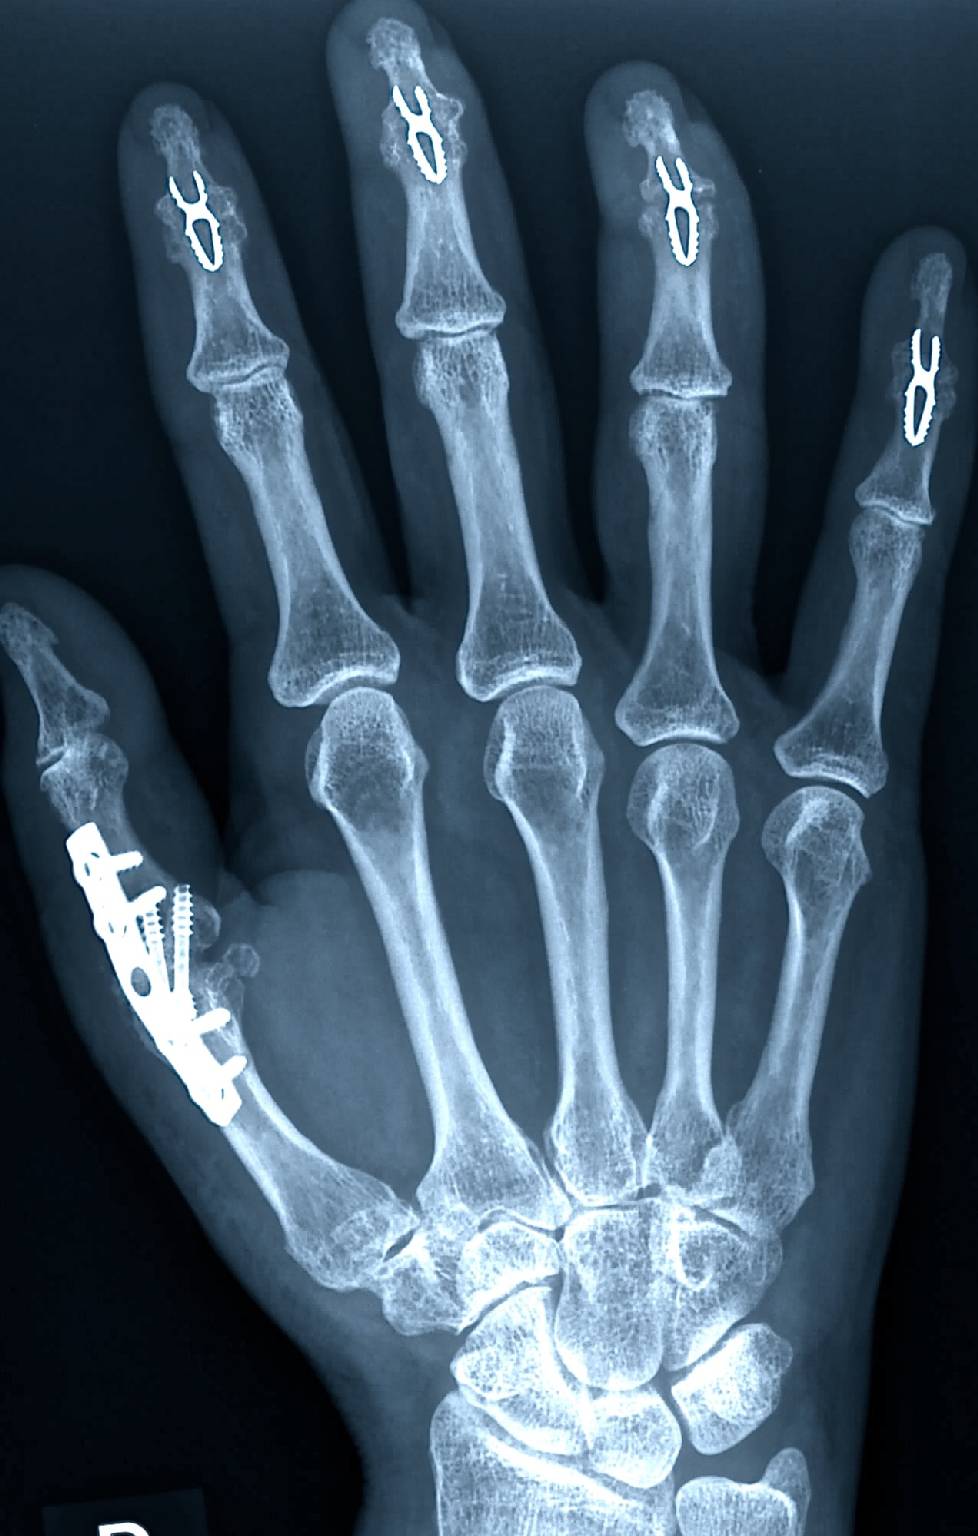 Sie brauchen eine Experten für Handchirurgie in Hürth? - Dann treten Sie gerne mit Heidemann Hand- und Ellenbogenchirurgie in Kontakt!